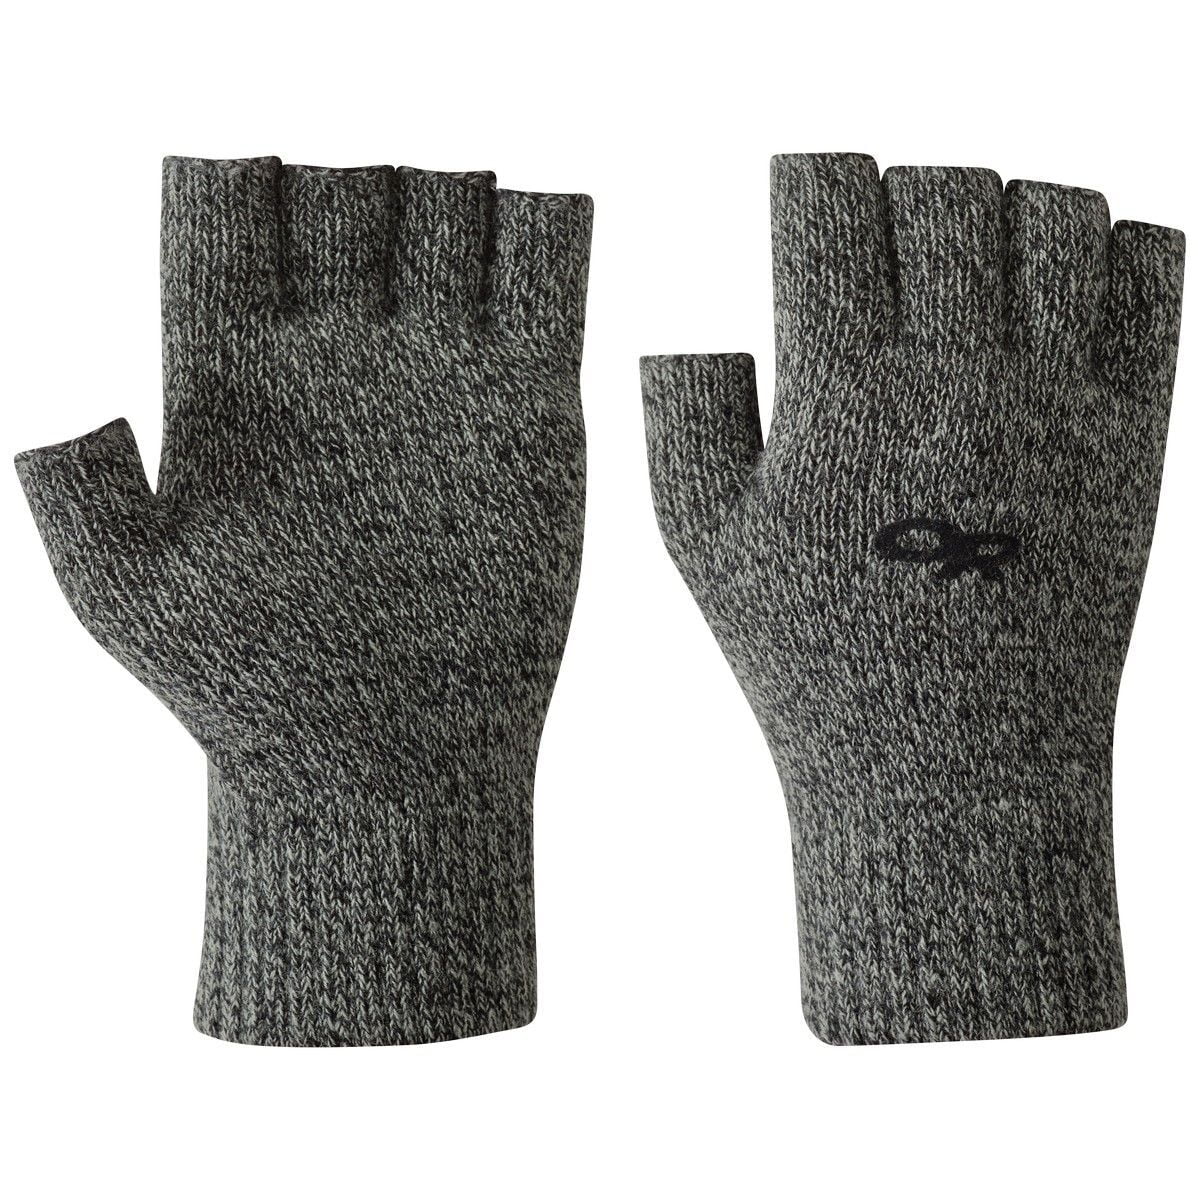 the fairbanks fingerless glove